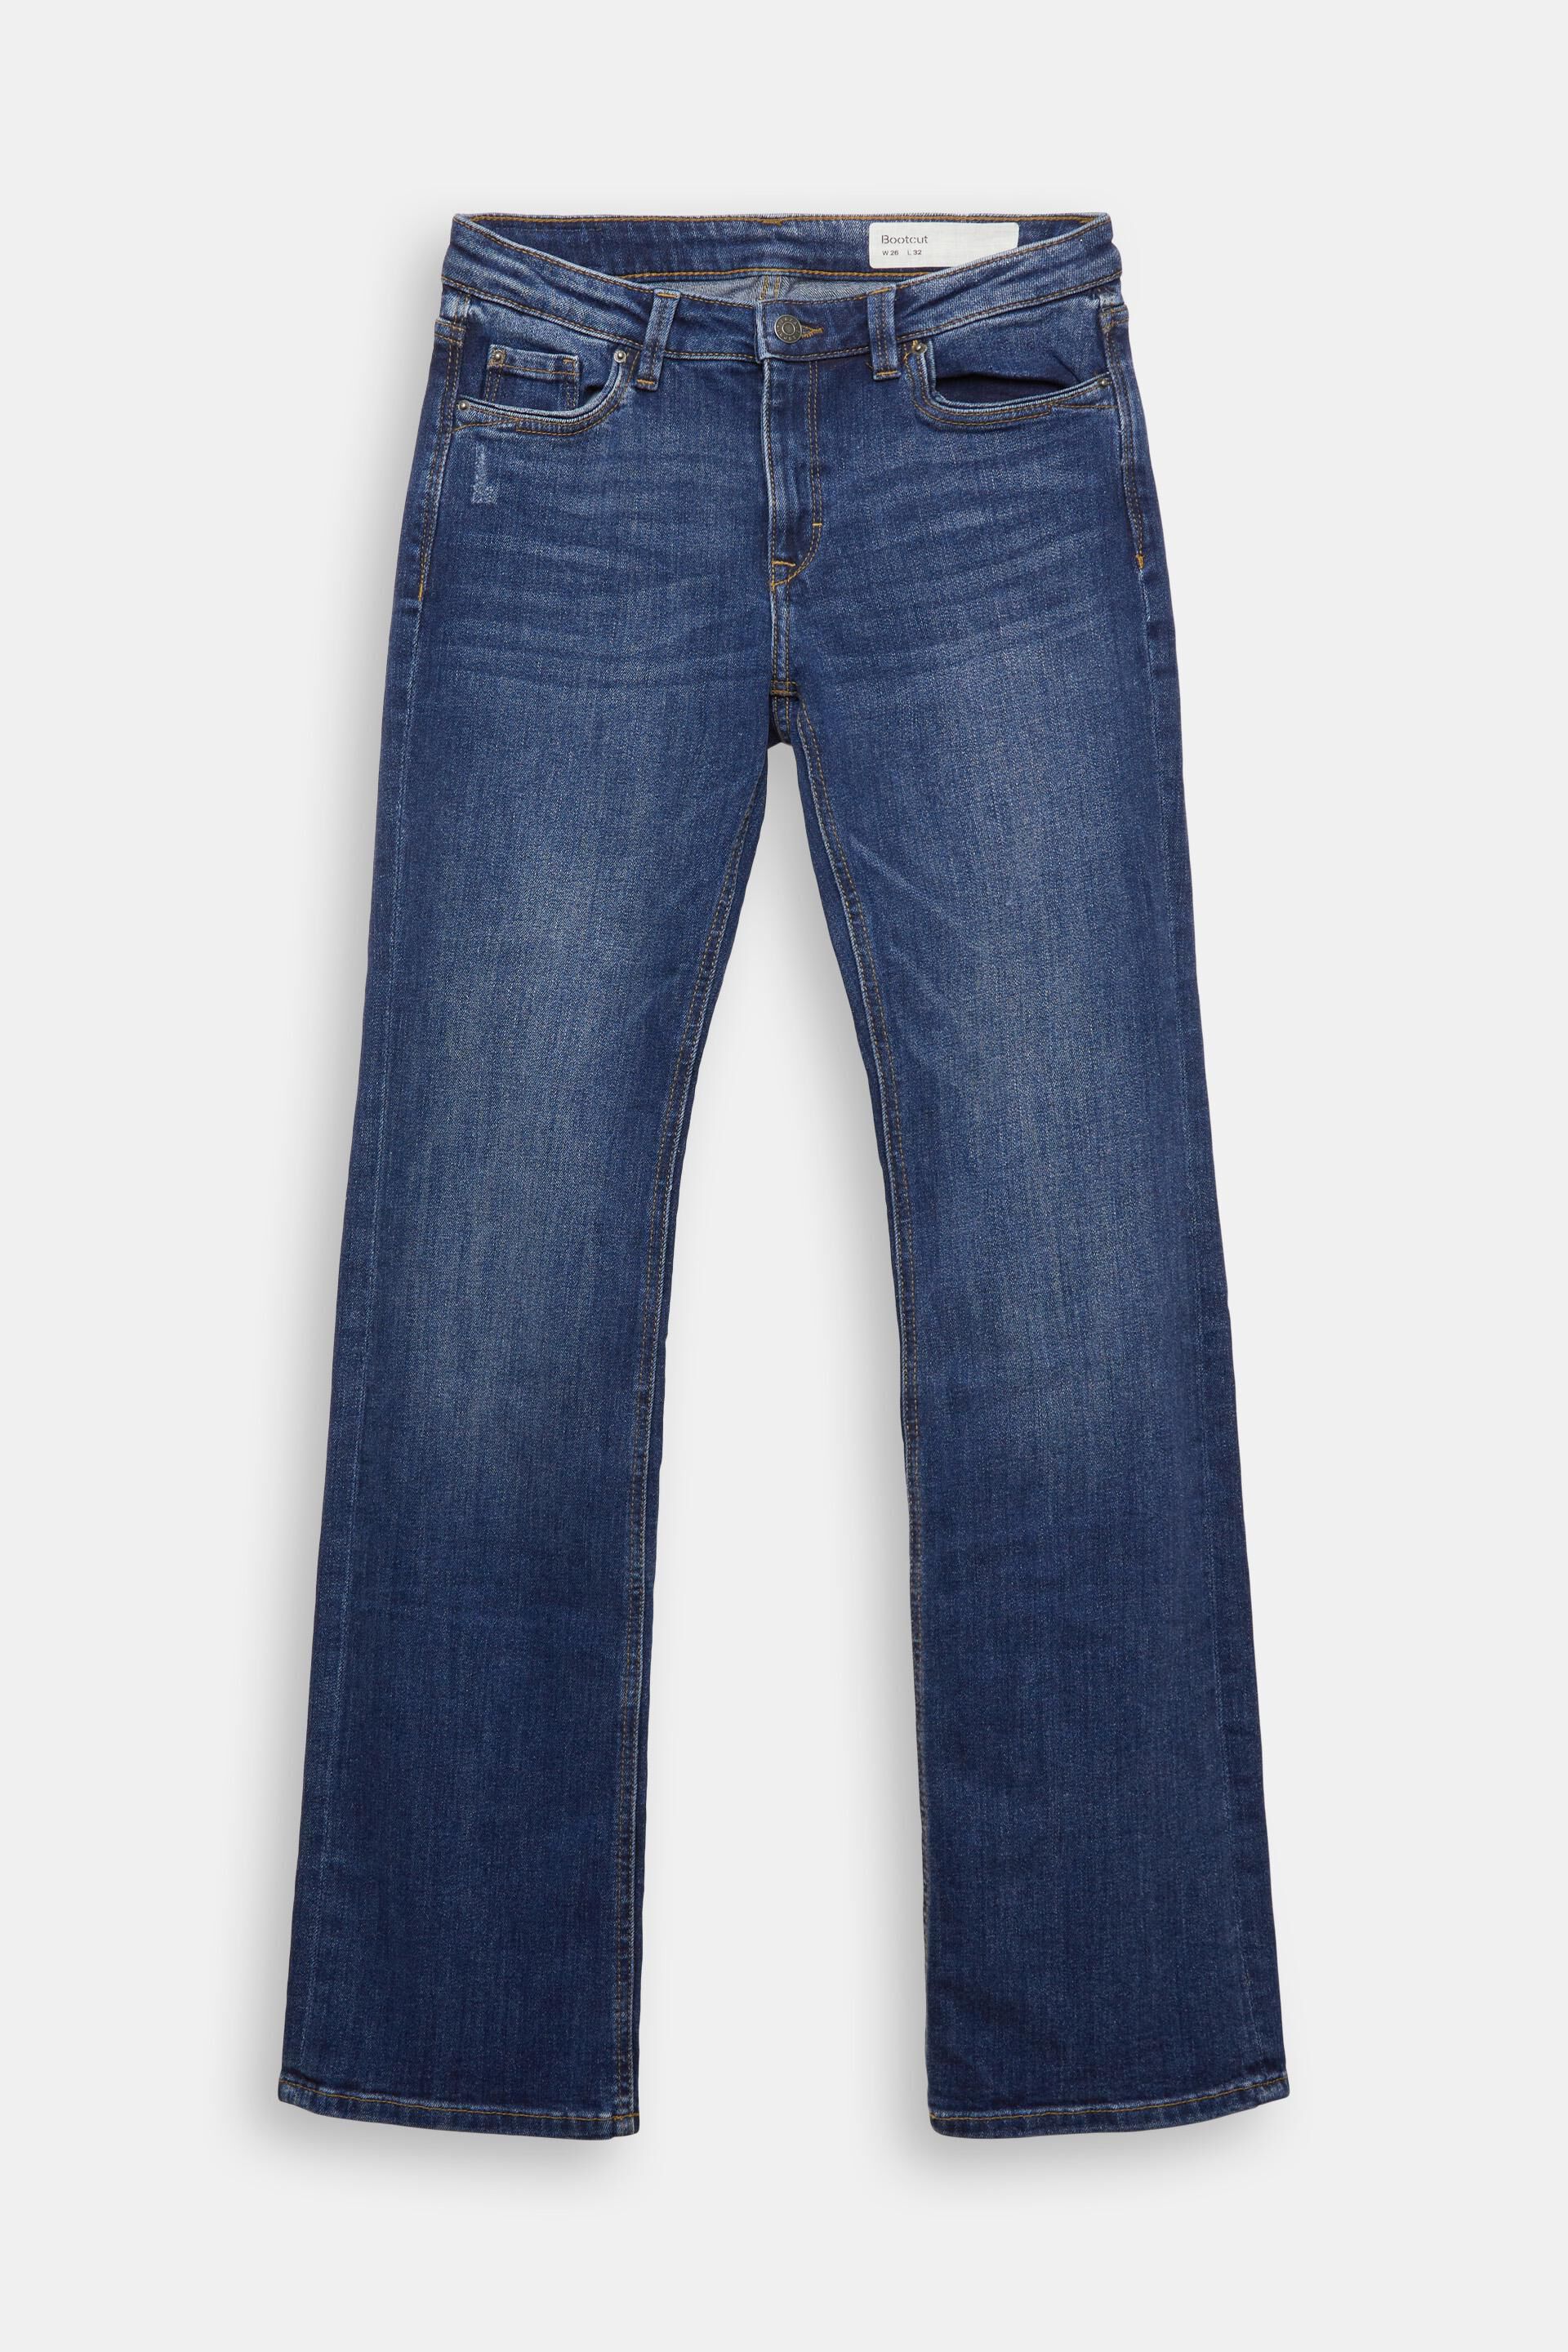 Esprit Shirt Met Lange Mouwen 016ee1k009 in het Blauw Dames Kleding voor voor Jeans voor Bootcut jeans 